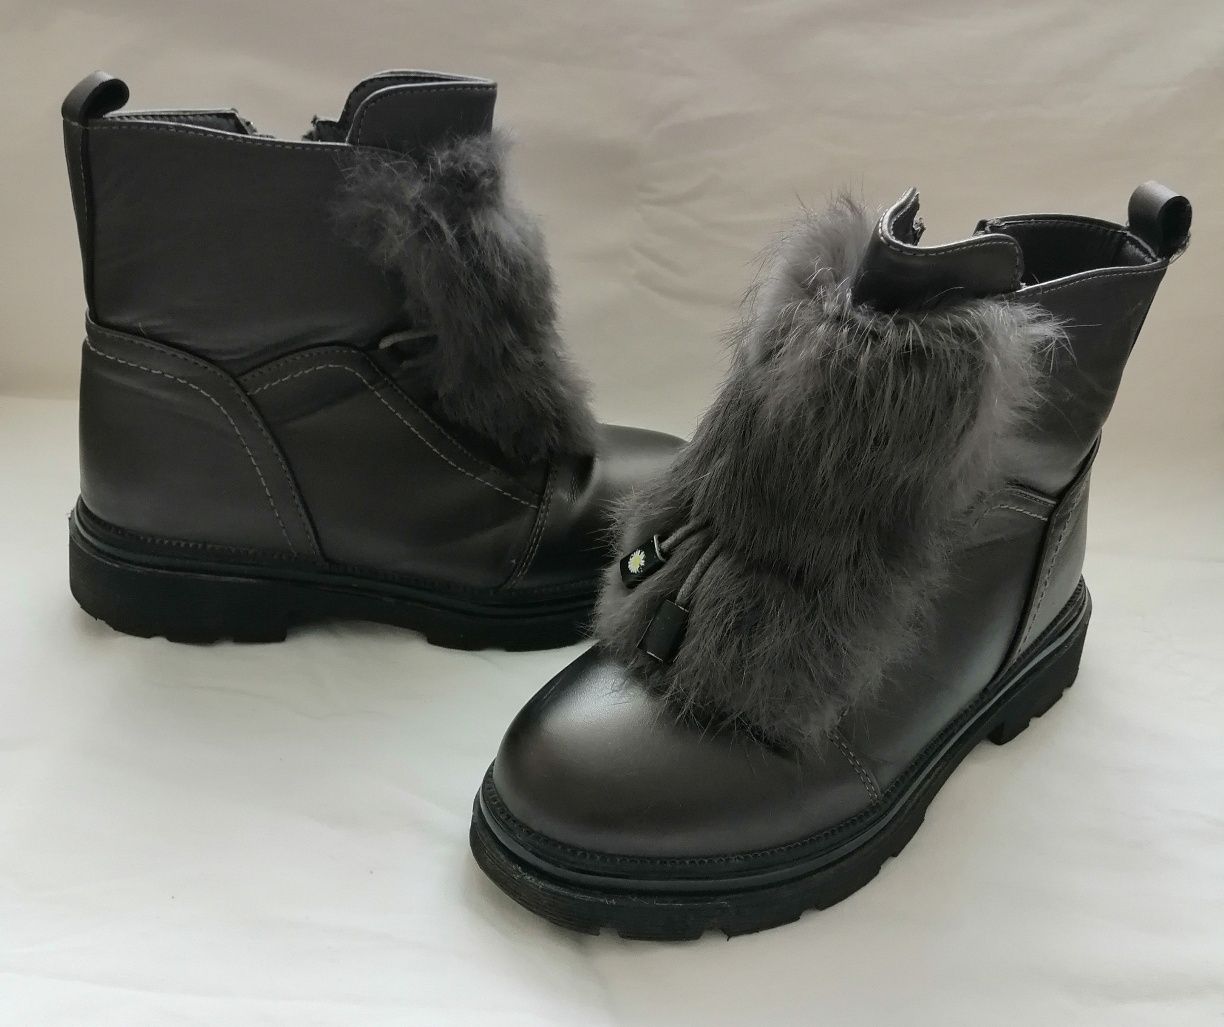 Зимове взуття для дітей